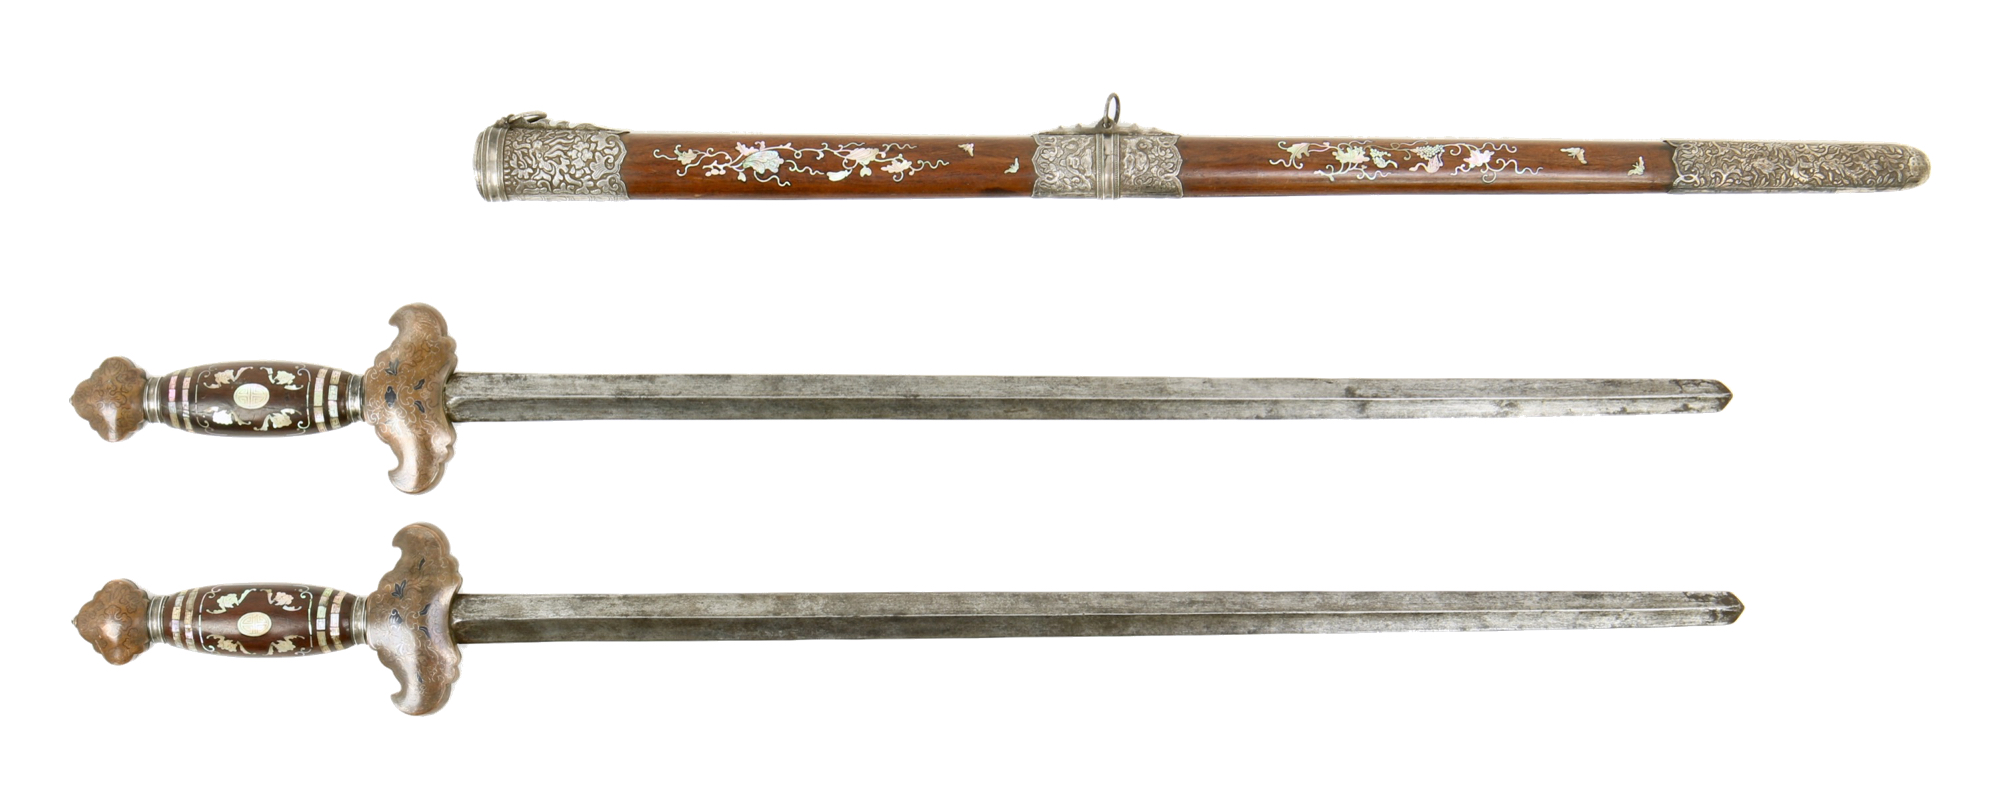 Vietnamese double swords